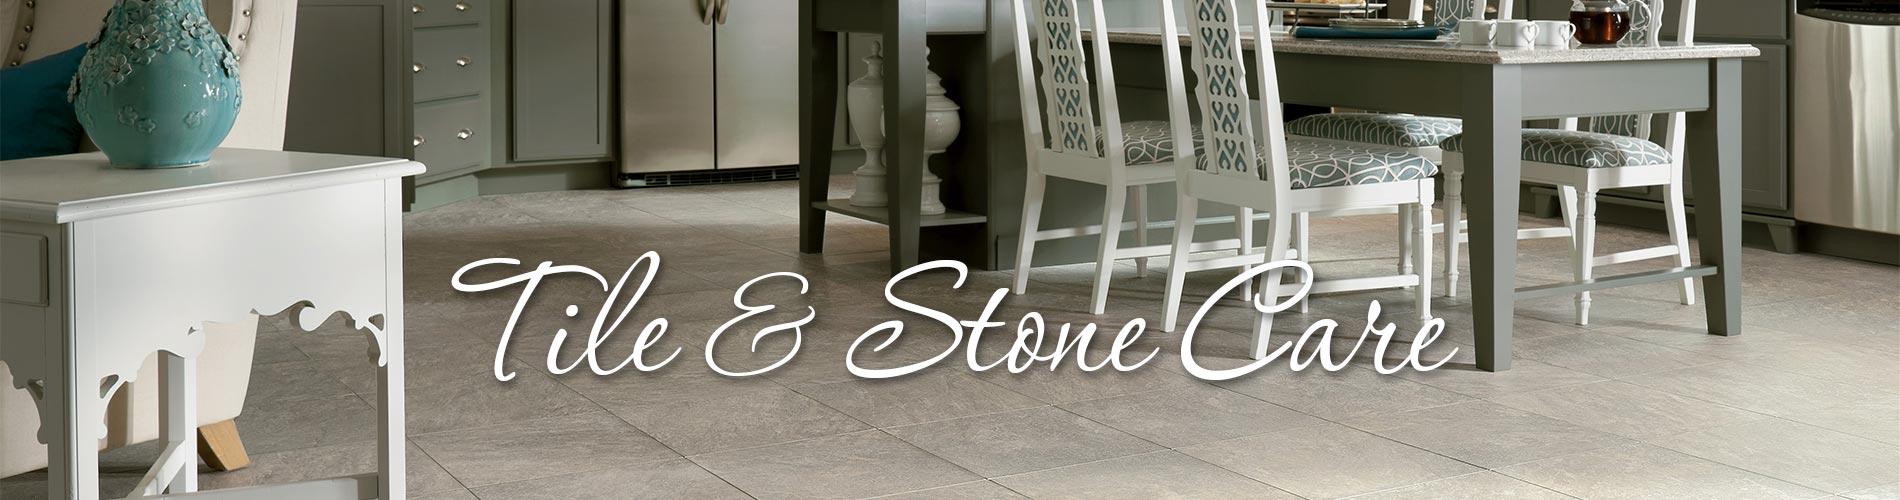 Tile & Stone Care